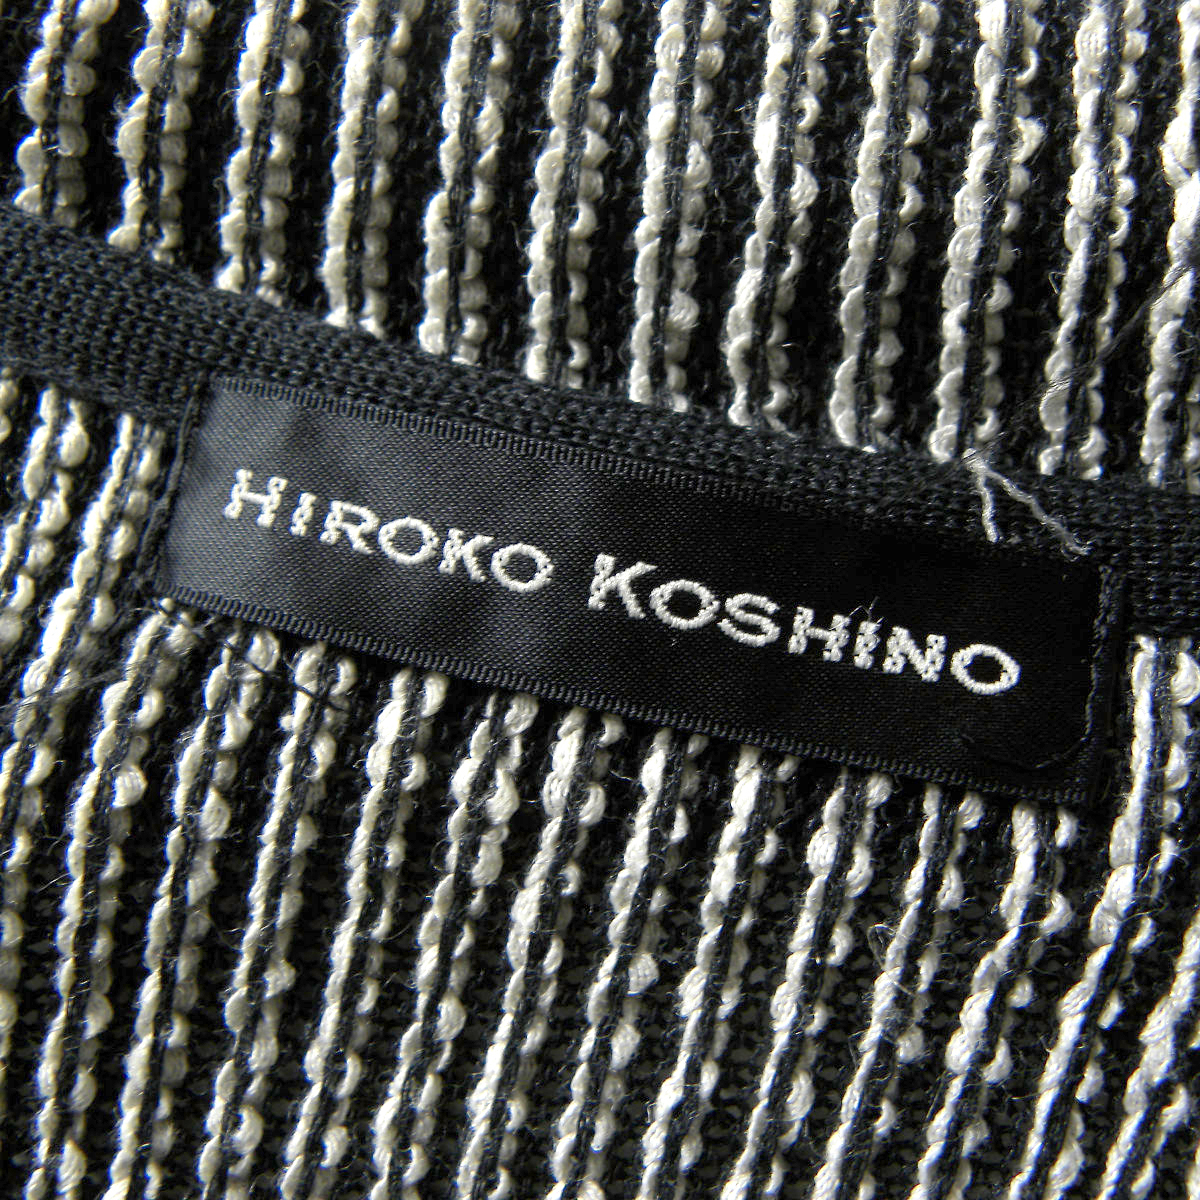  Hiroko Koshino HIROKO KOSHINO хлопок linen Blend большой laperu вязаный кардиган длинный рукав короткий 38 черный сделано в Японии l0326-13